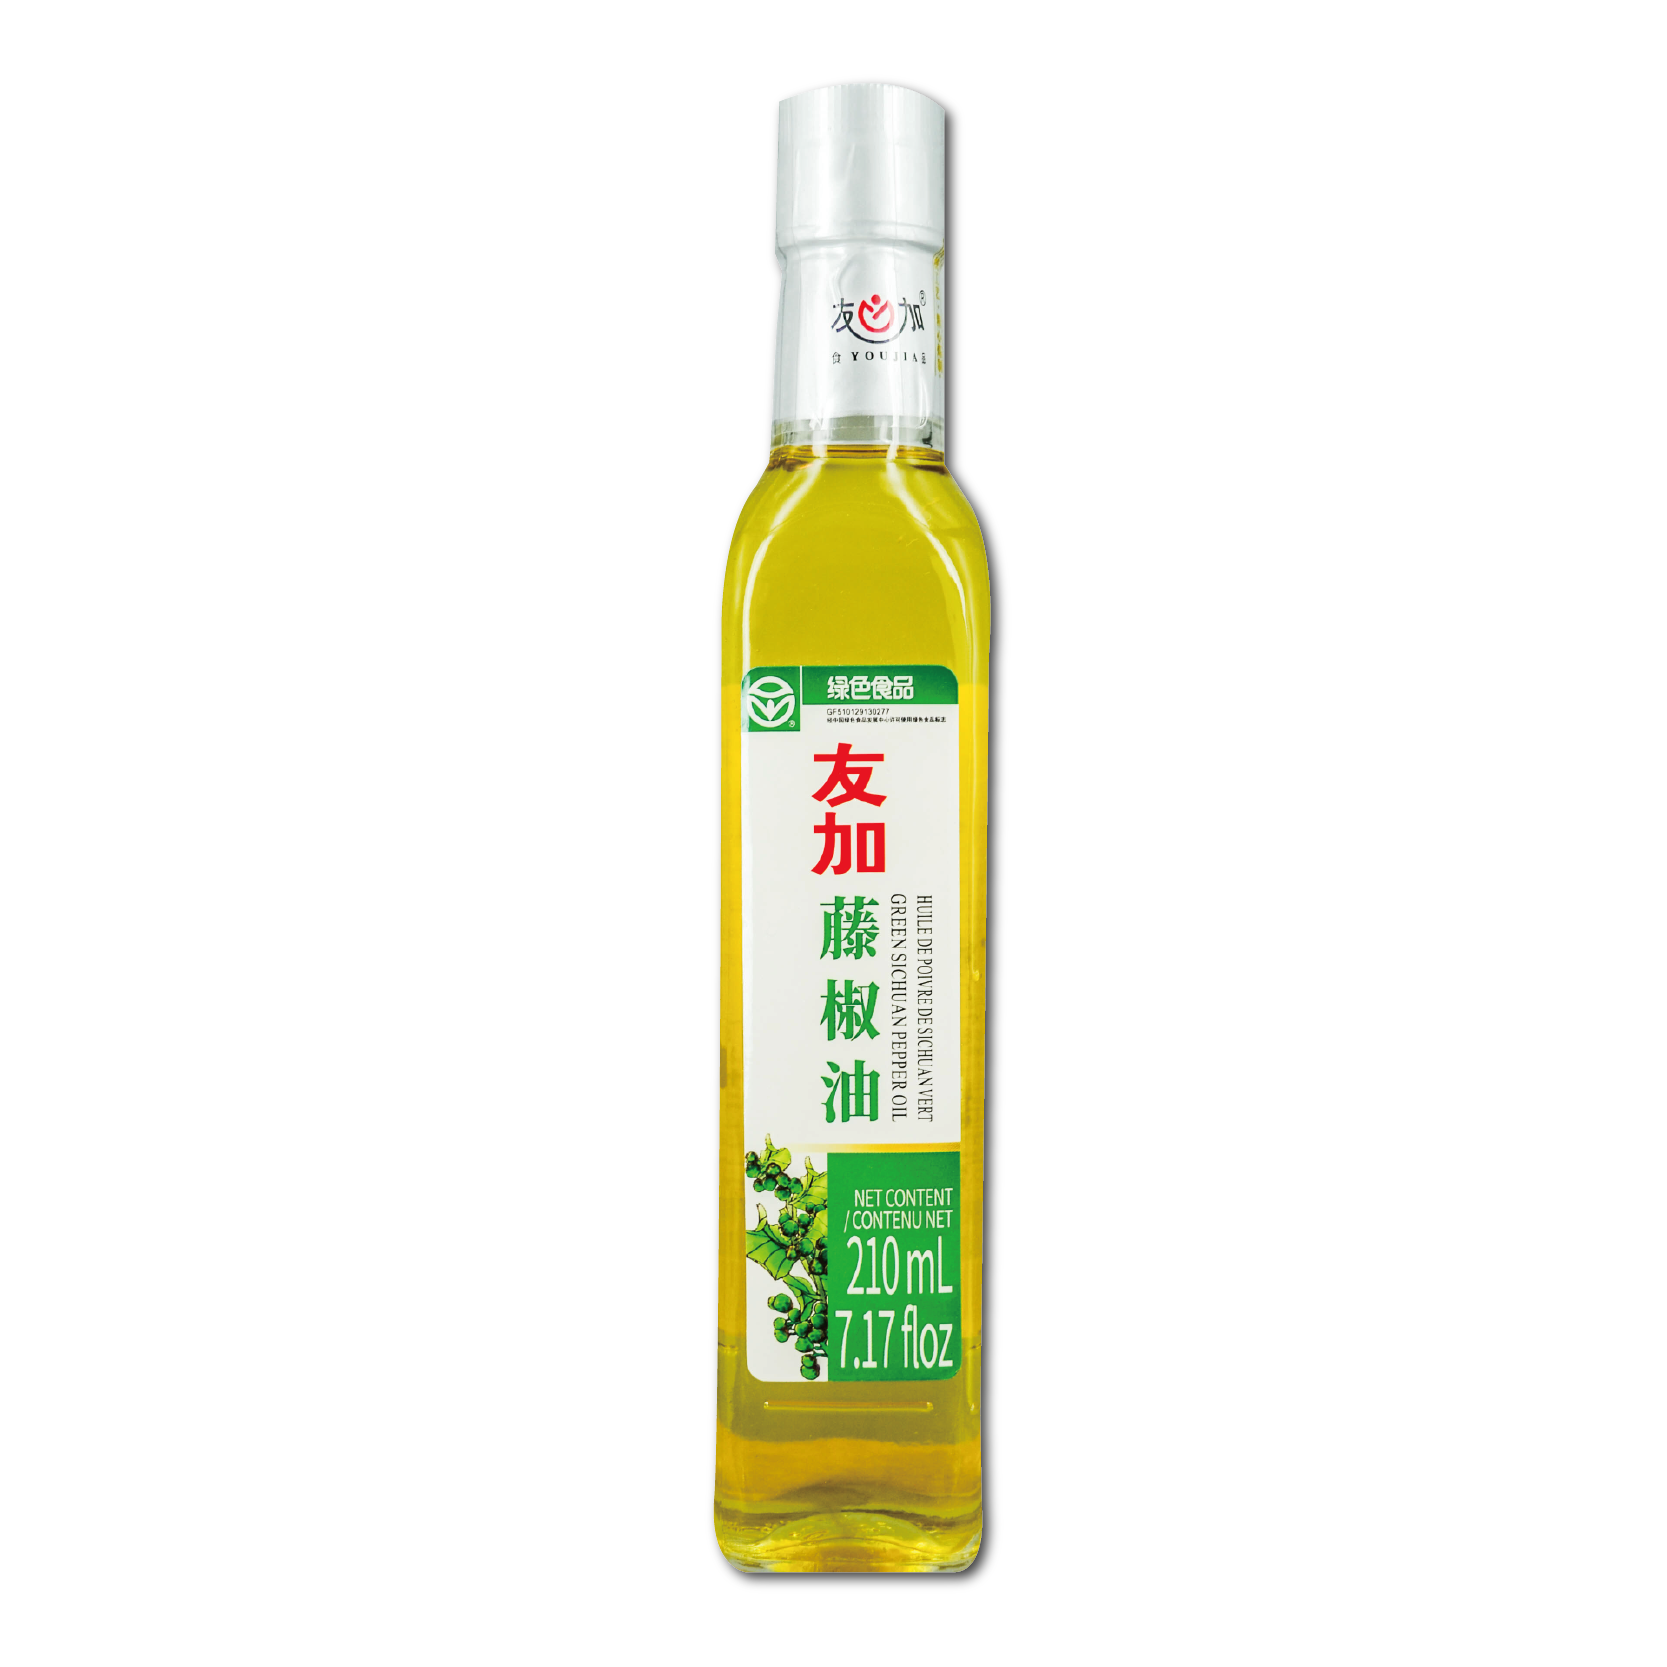 youjia-green-sichuan-pepper-oil